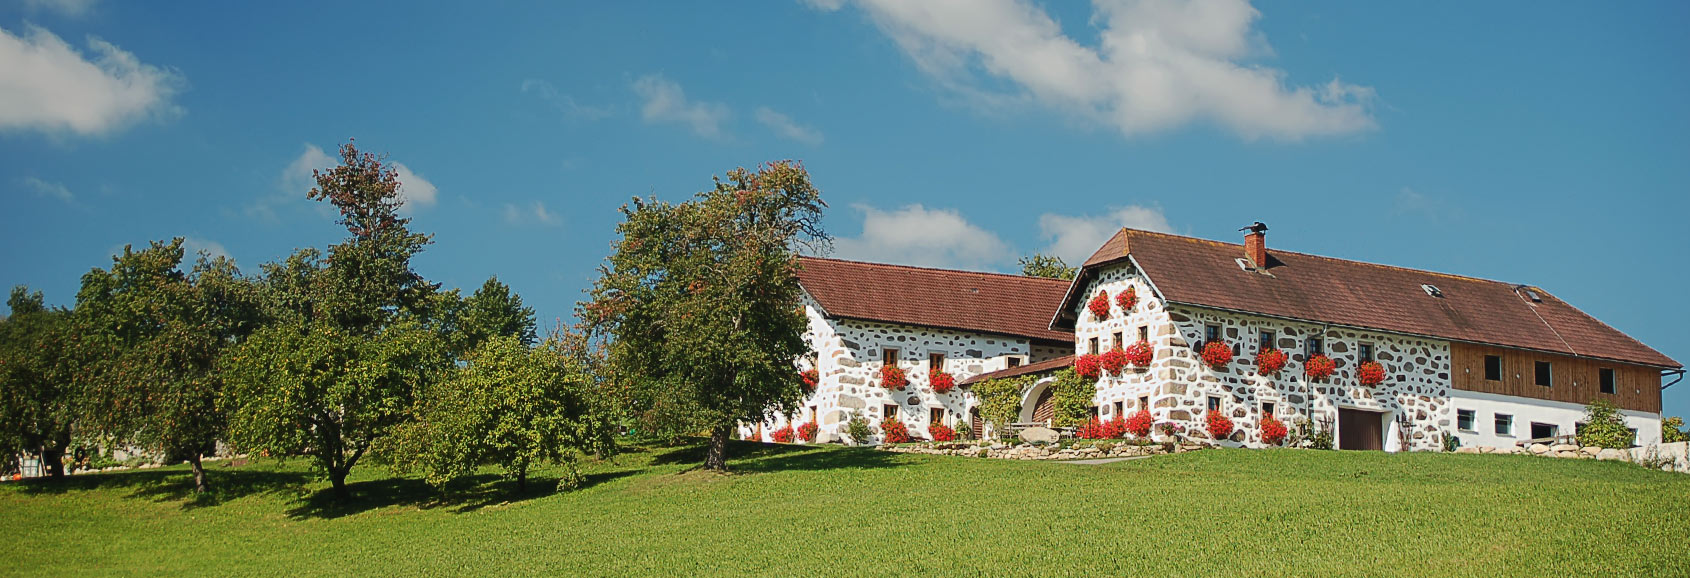 Immobilienangebot – Bauernhof kaufen in Niederbayern